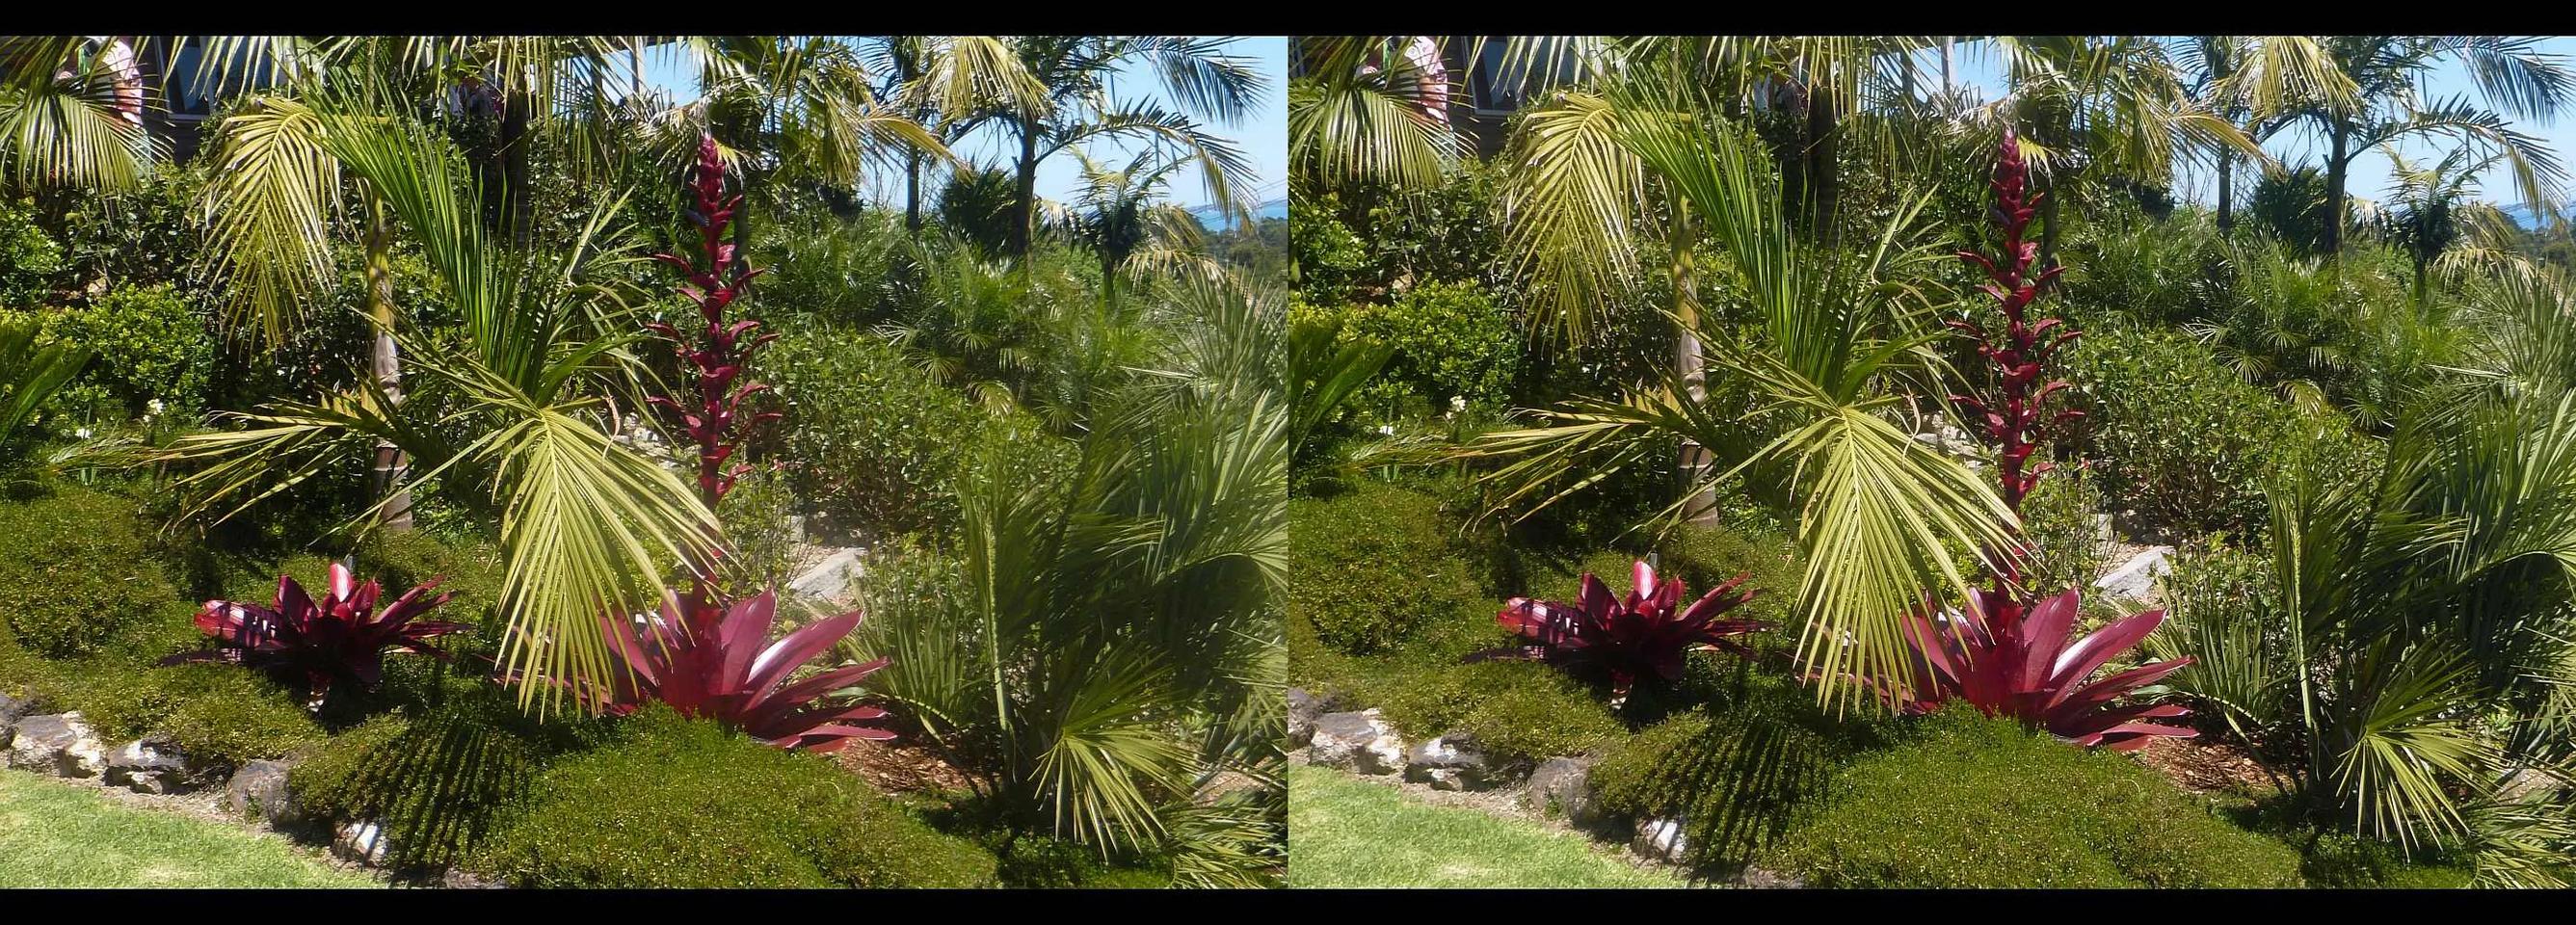 Garden on Waiheke Island – NZ